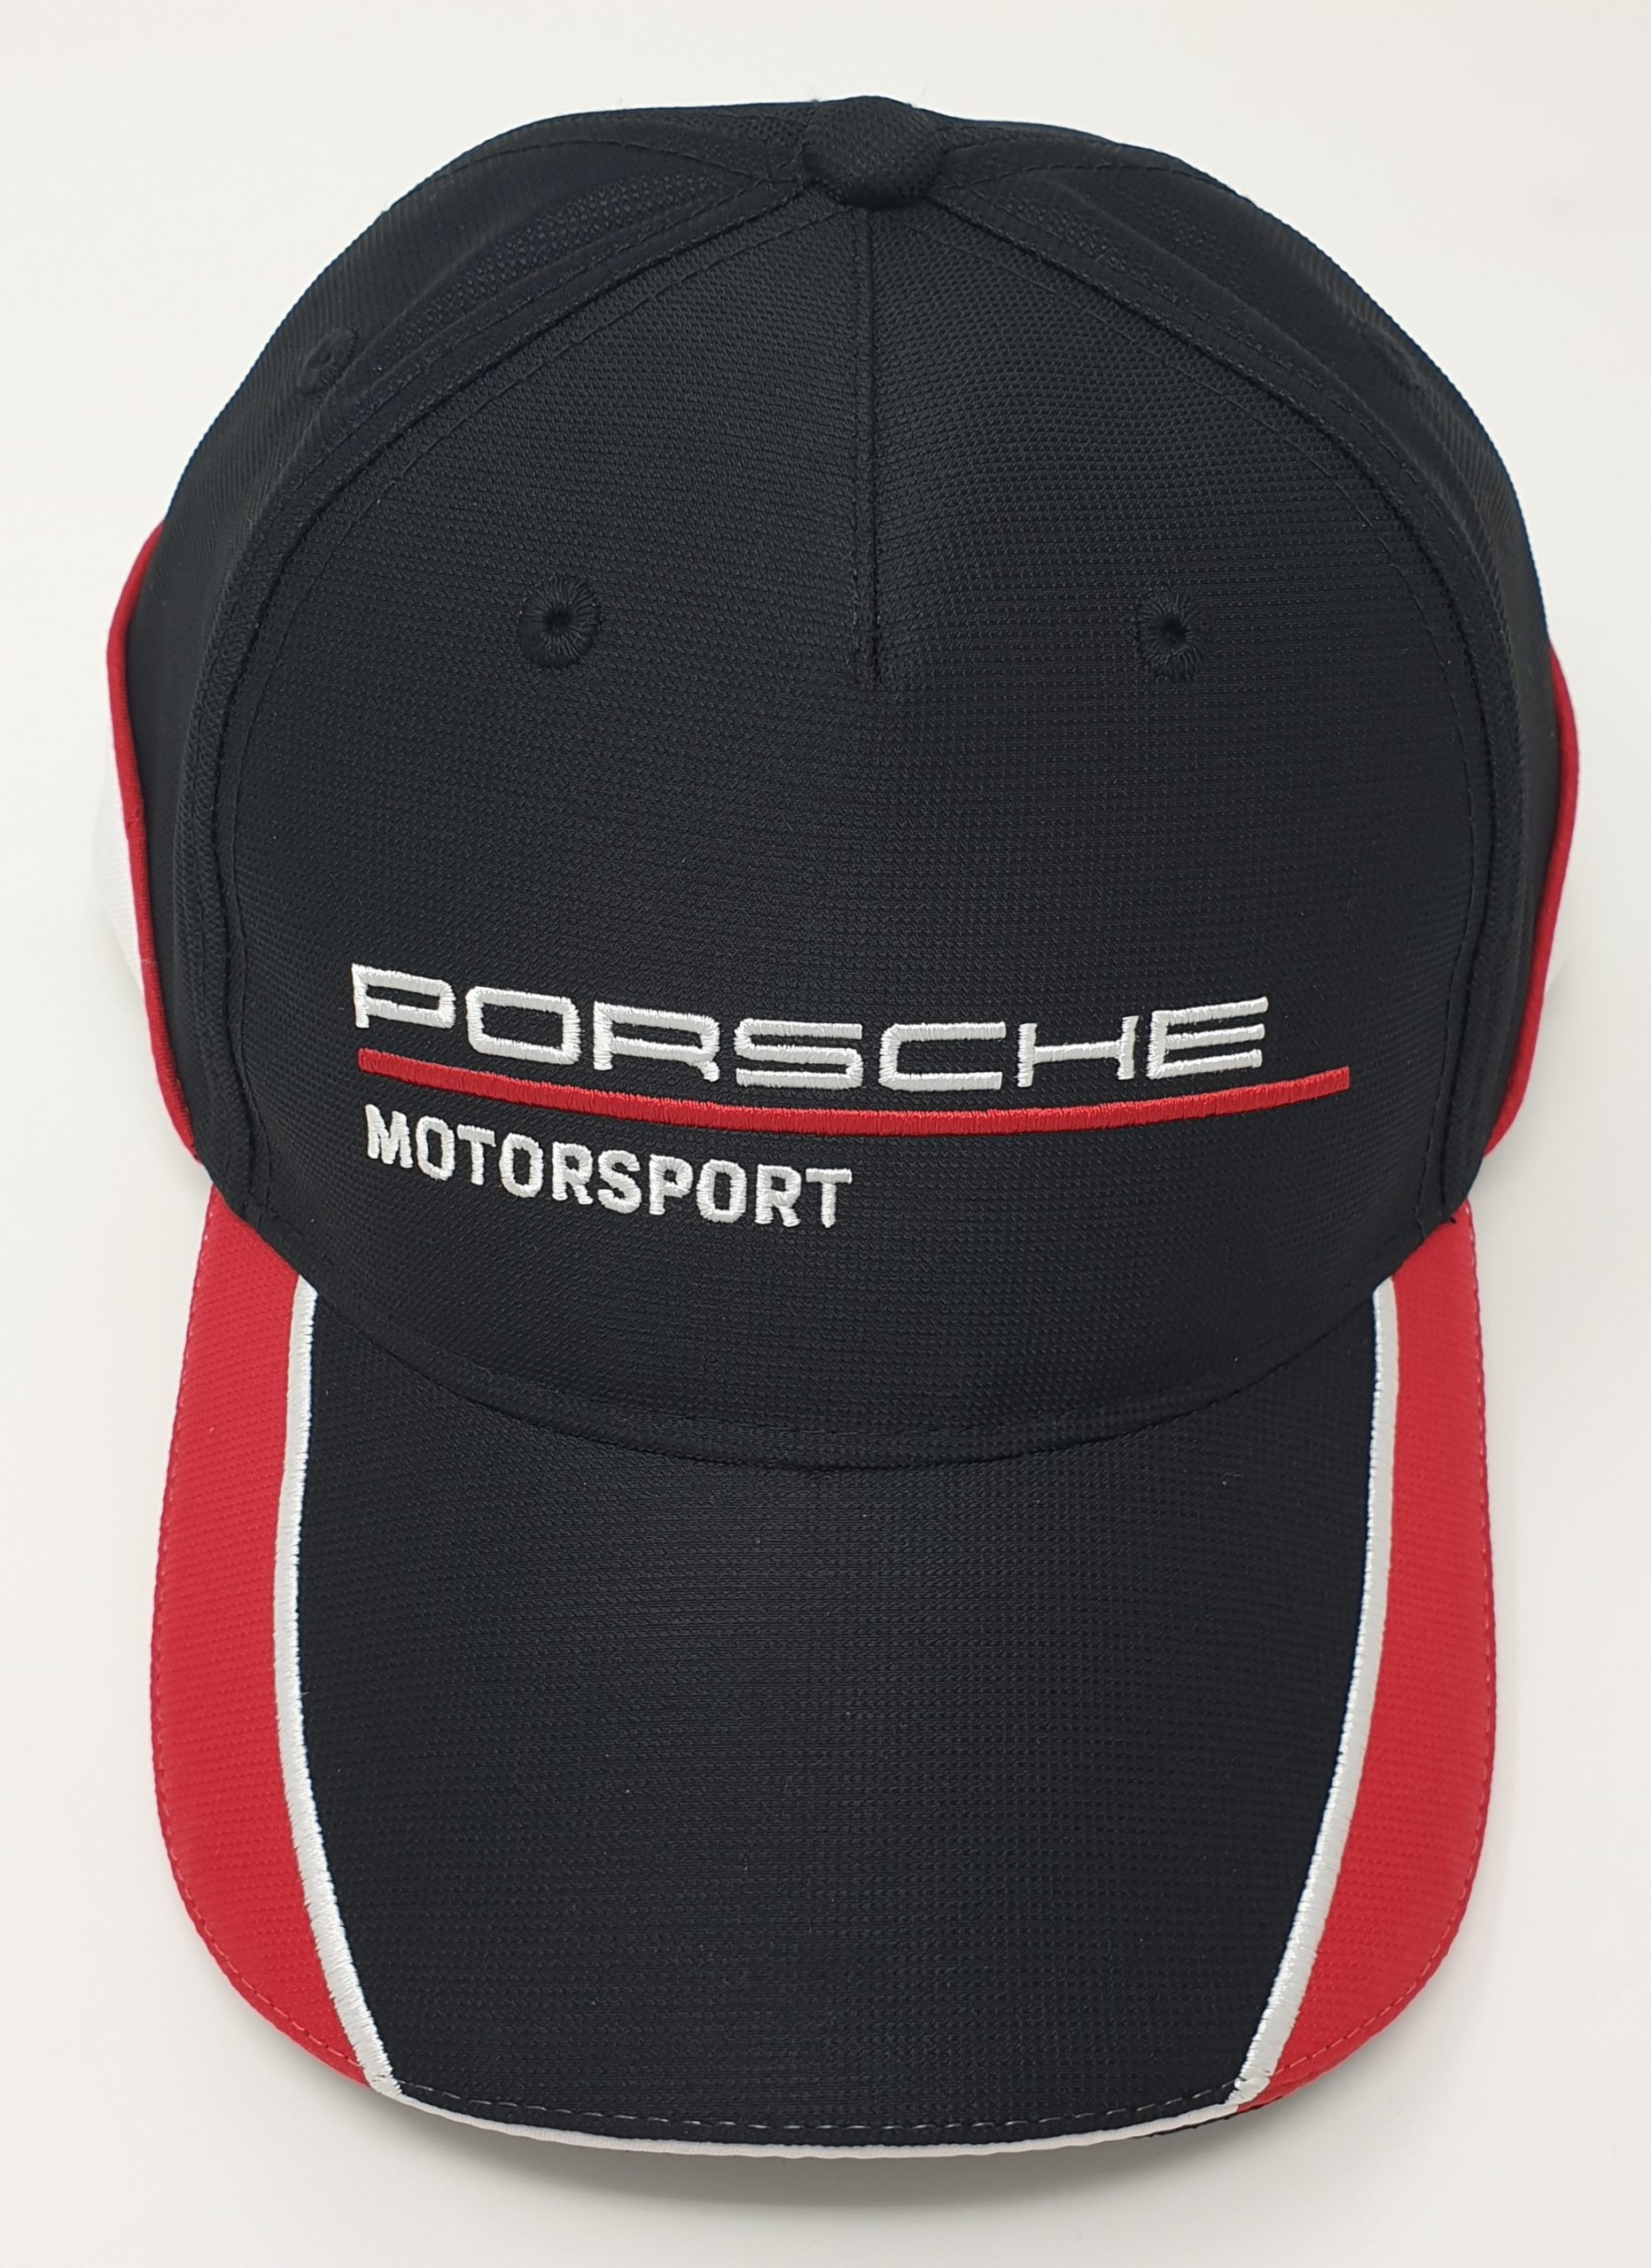 430 Wap - Genuine Porsche Motorsport Baseball Cap - WAP.430.001.0K - Parr Porsche